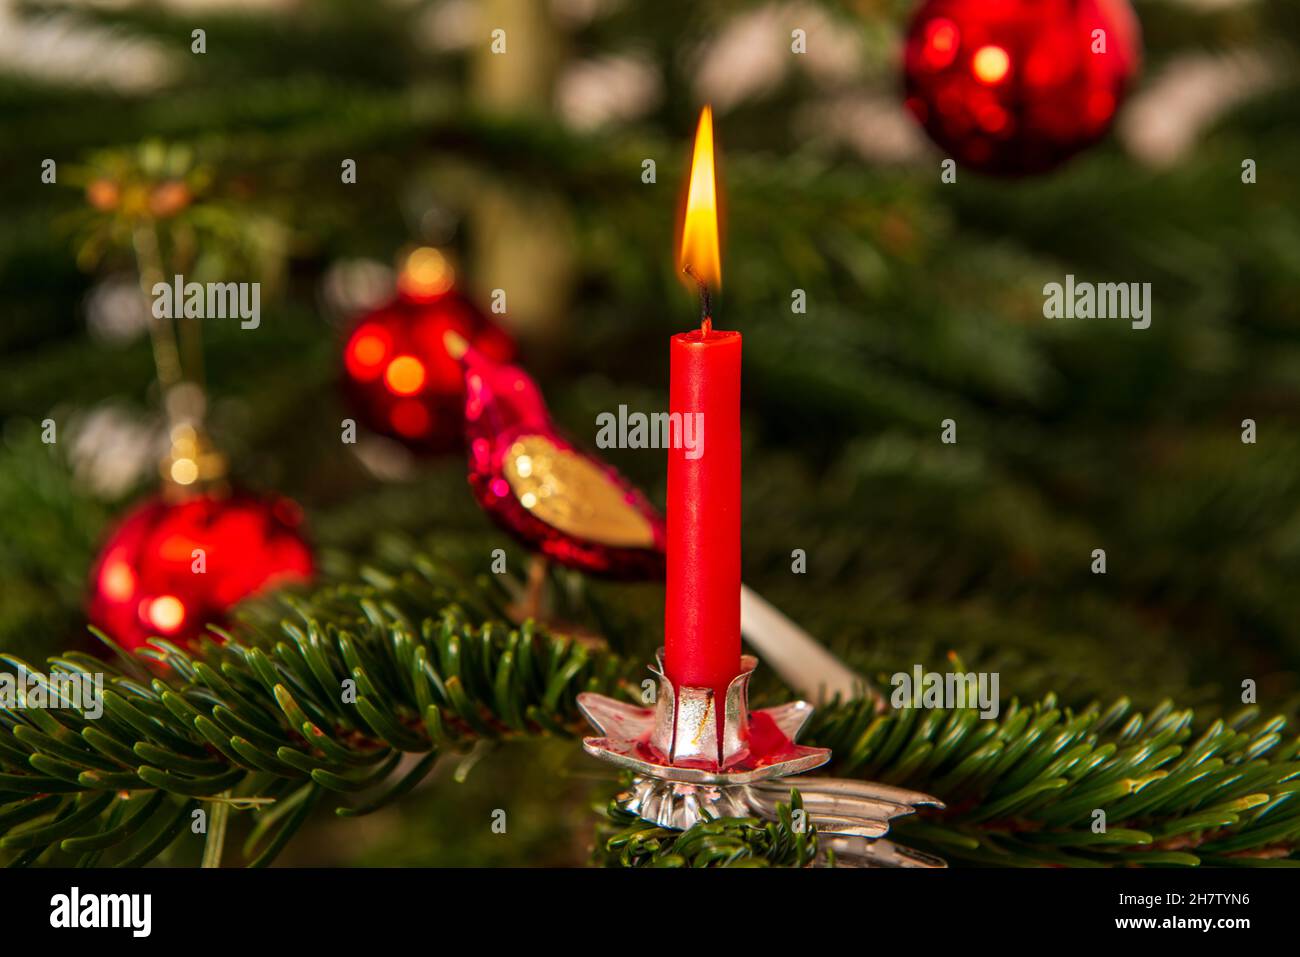 Rote brennende Weihnachtskerze un einem Weihnachtsbaum Foto Stock